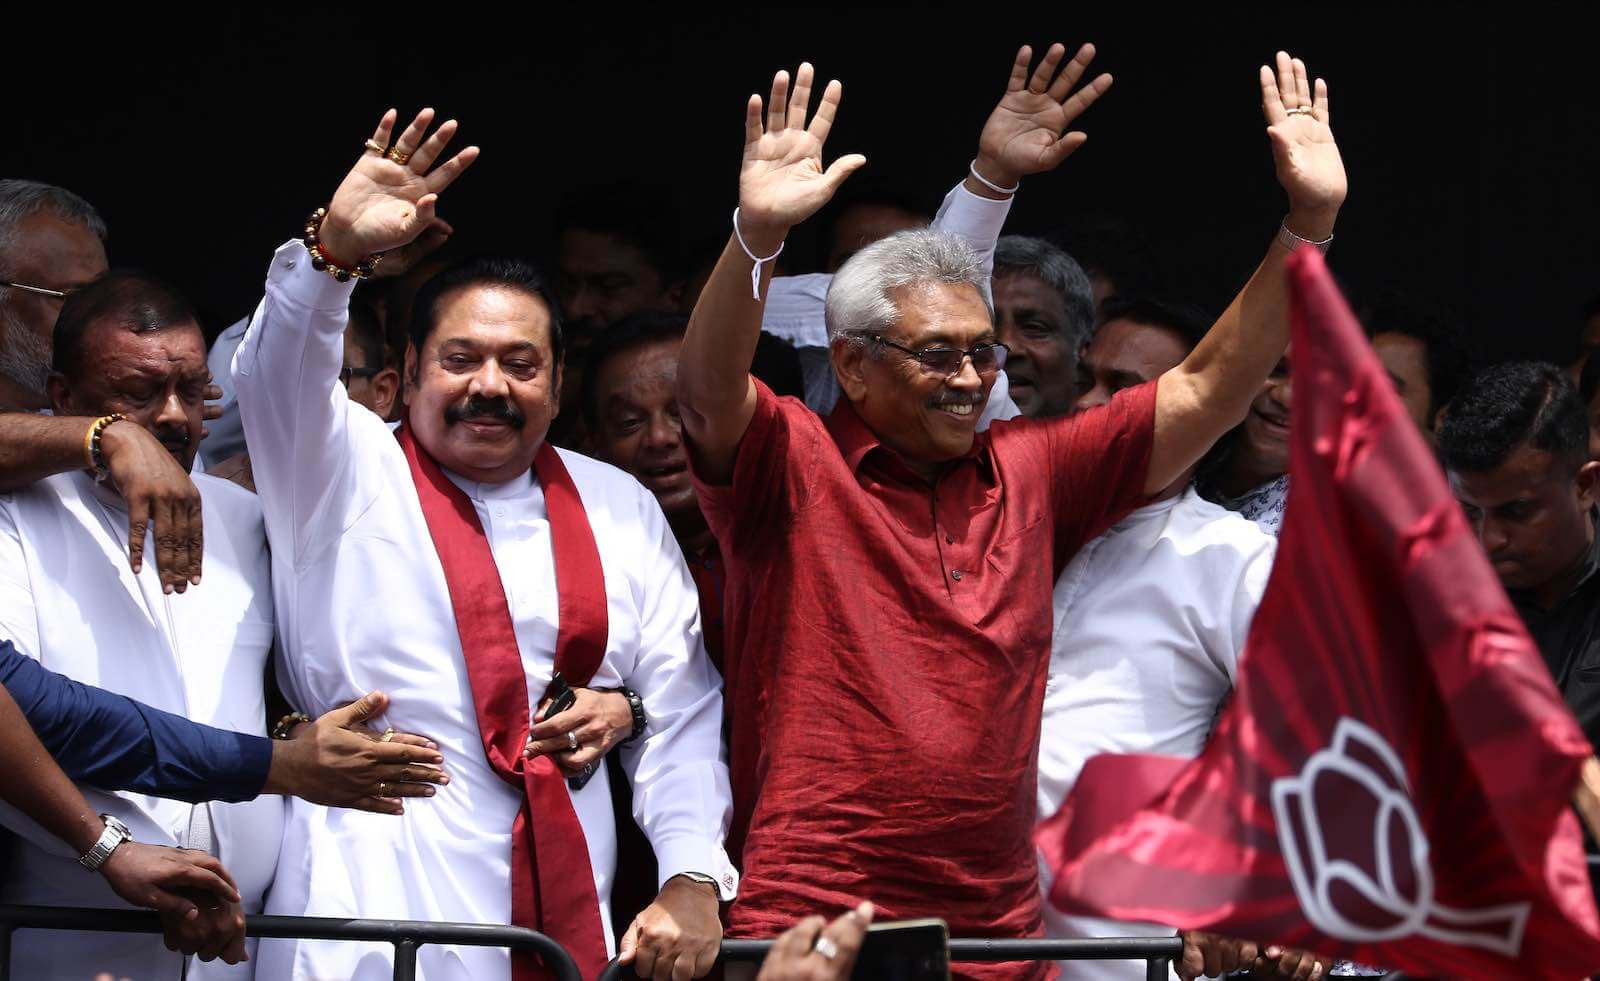 Landslide Victory for the Rajapaksa Brothers in Sri Lanka